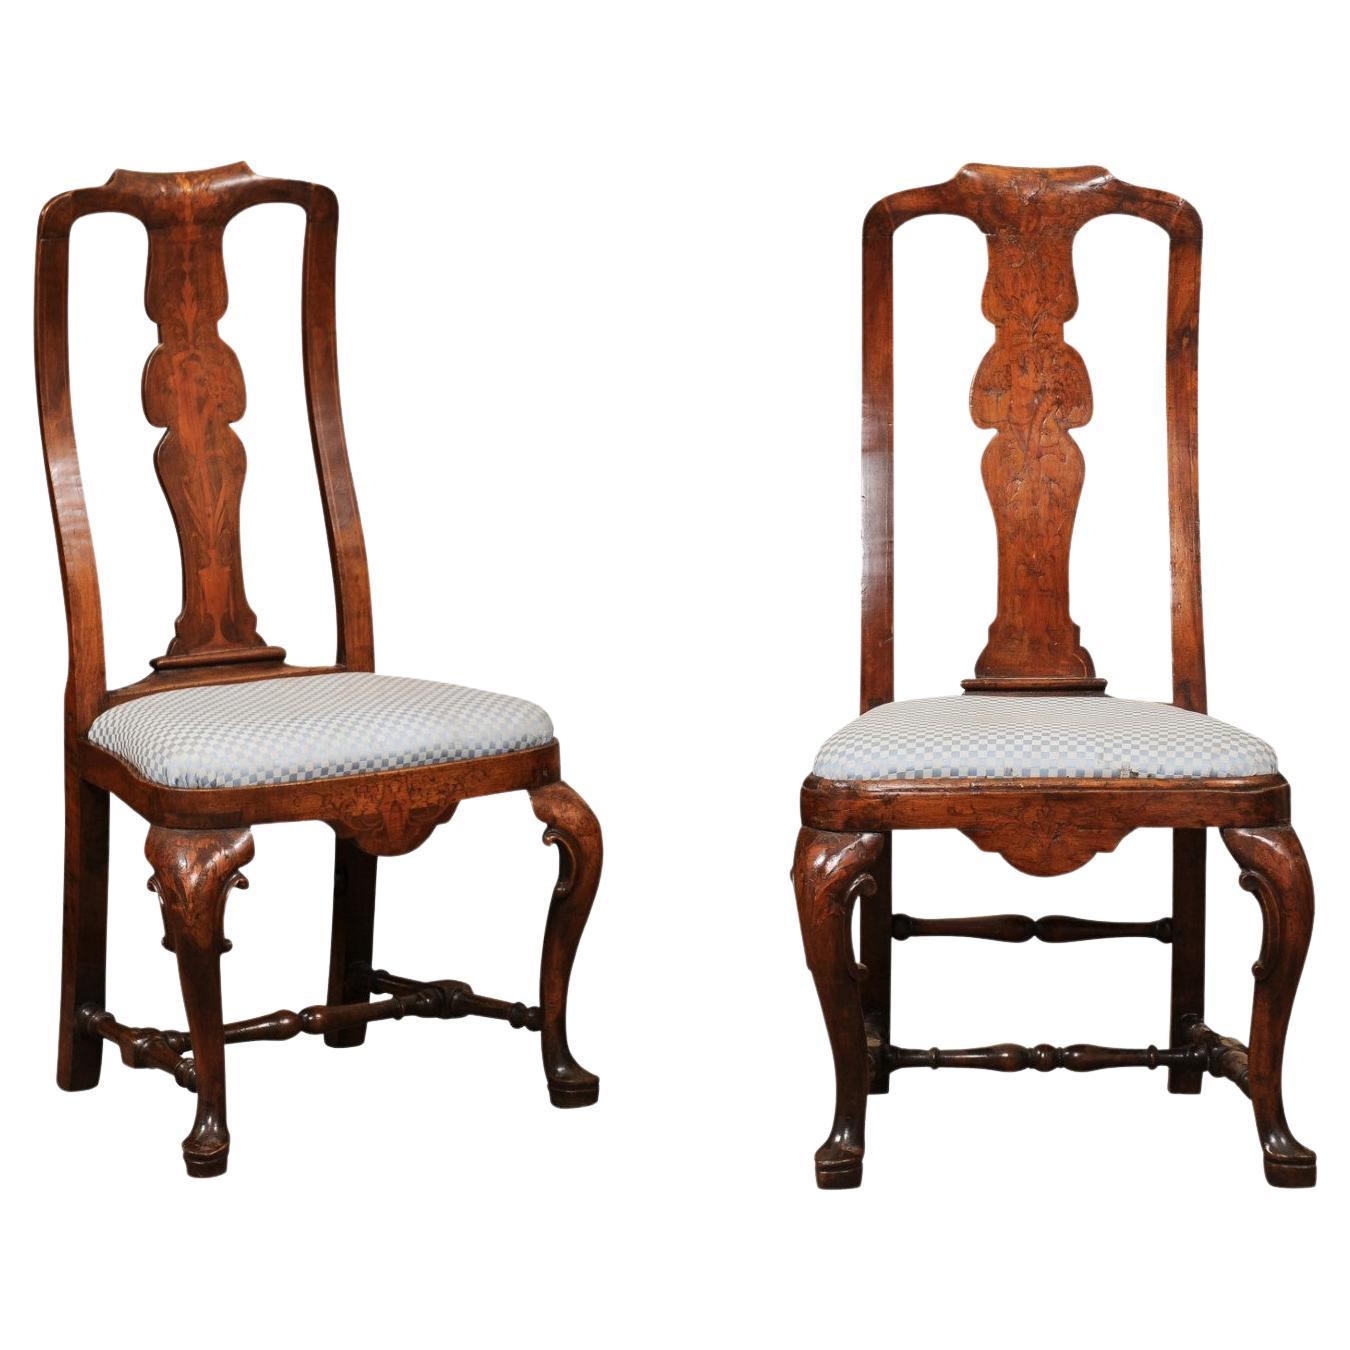 Paire de chaises d'appoint hollandaises en noyer du XVIIIe siècle avec marqueterie et pieds pad